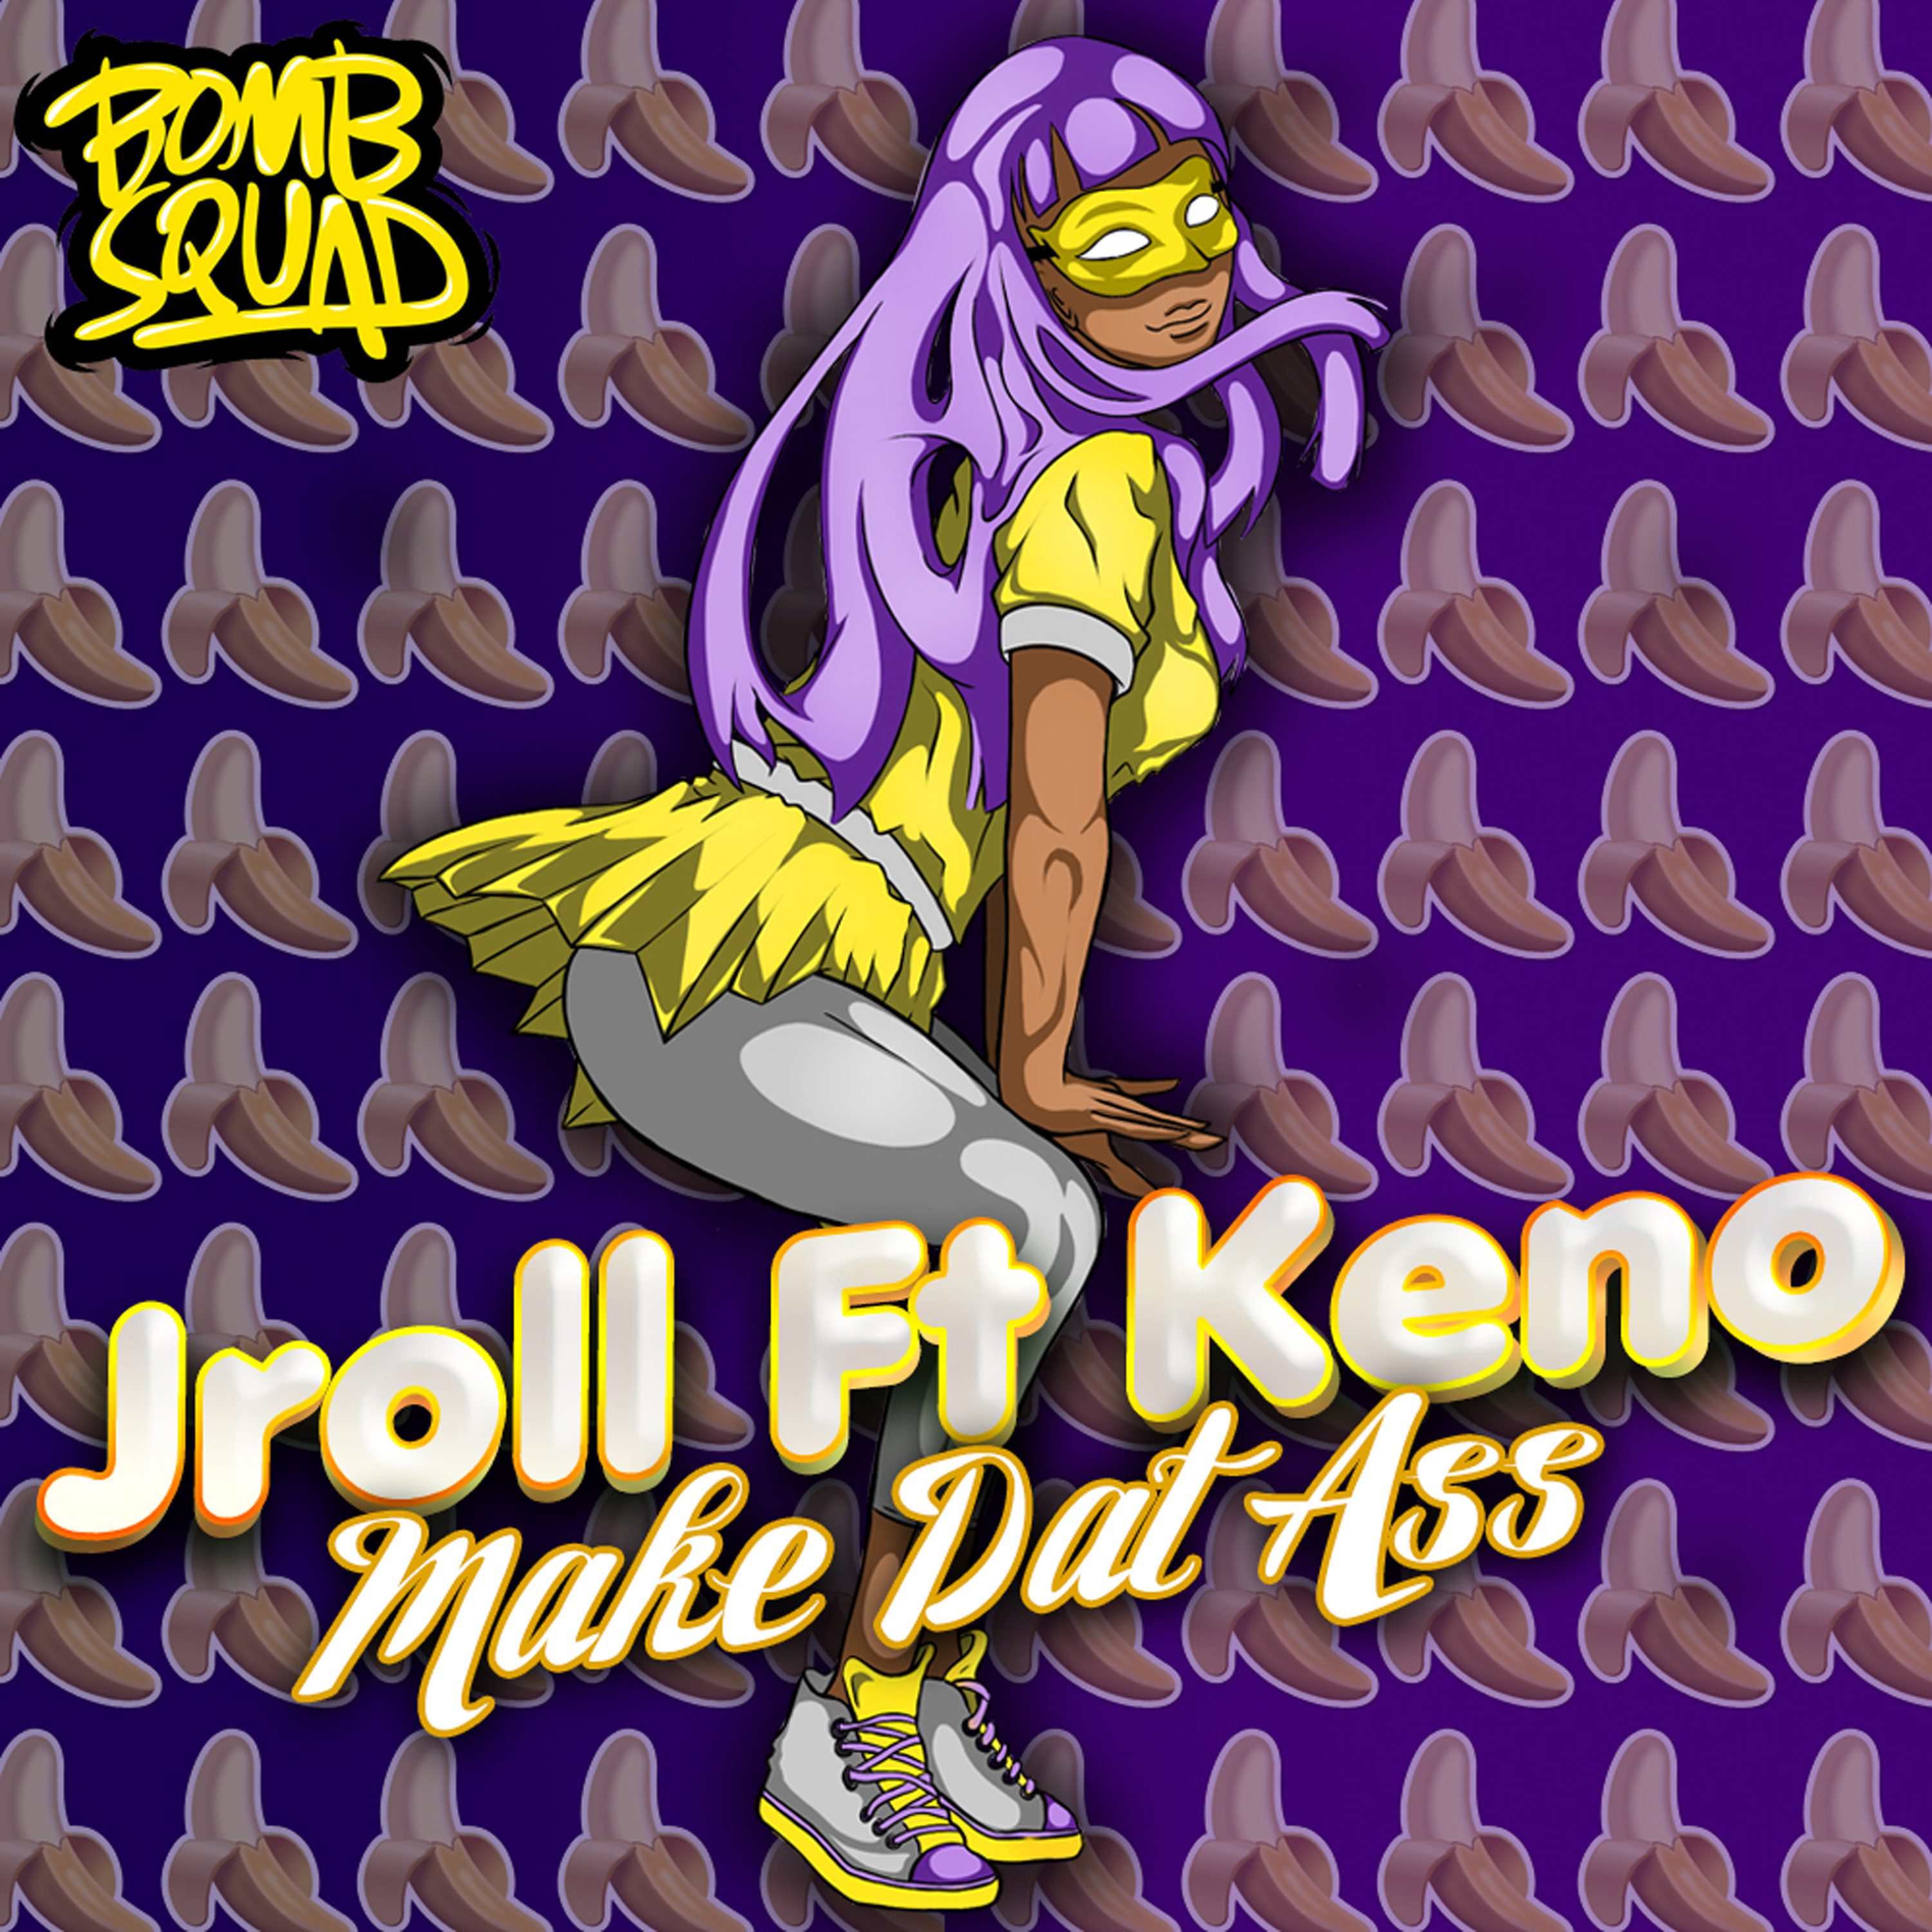 Make Dat Ass (feat. Keno)